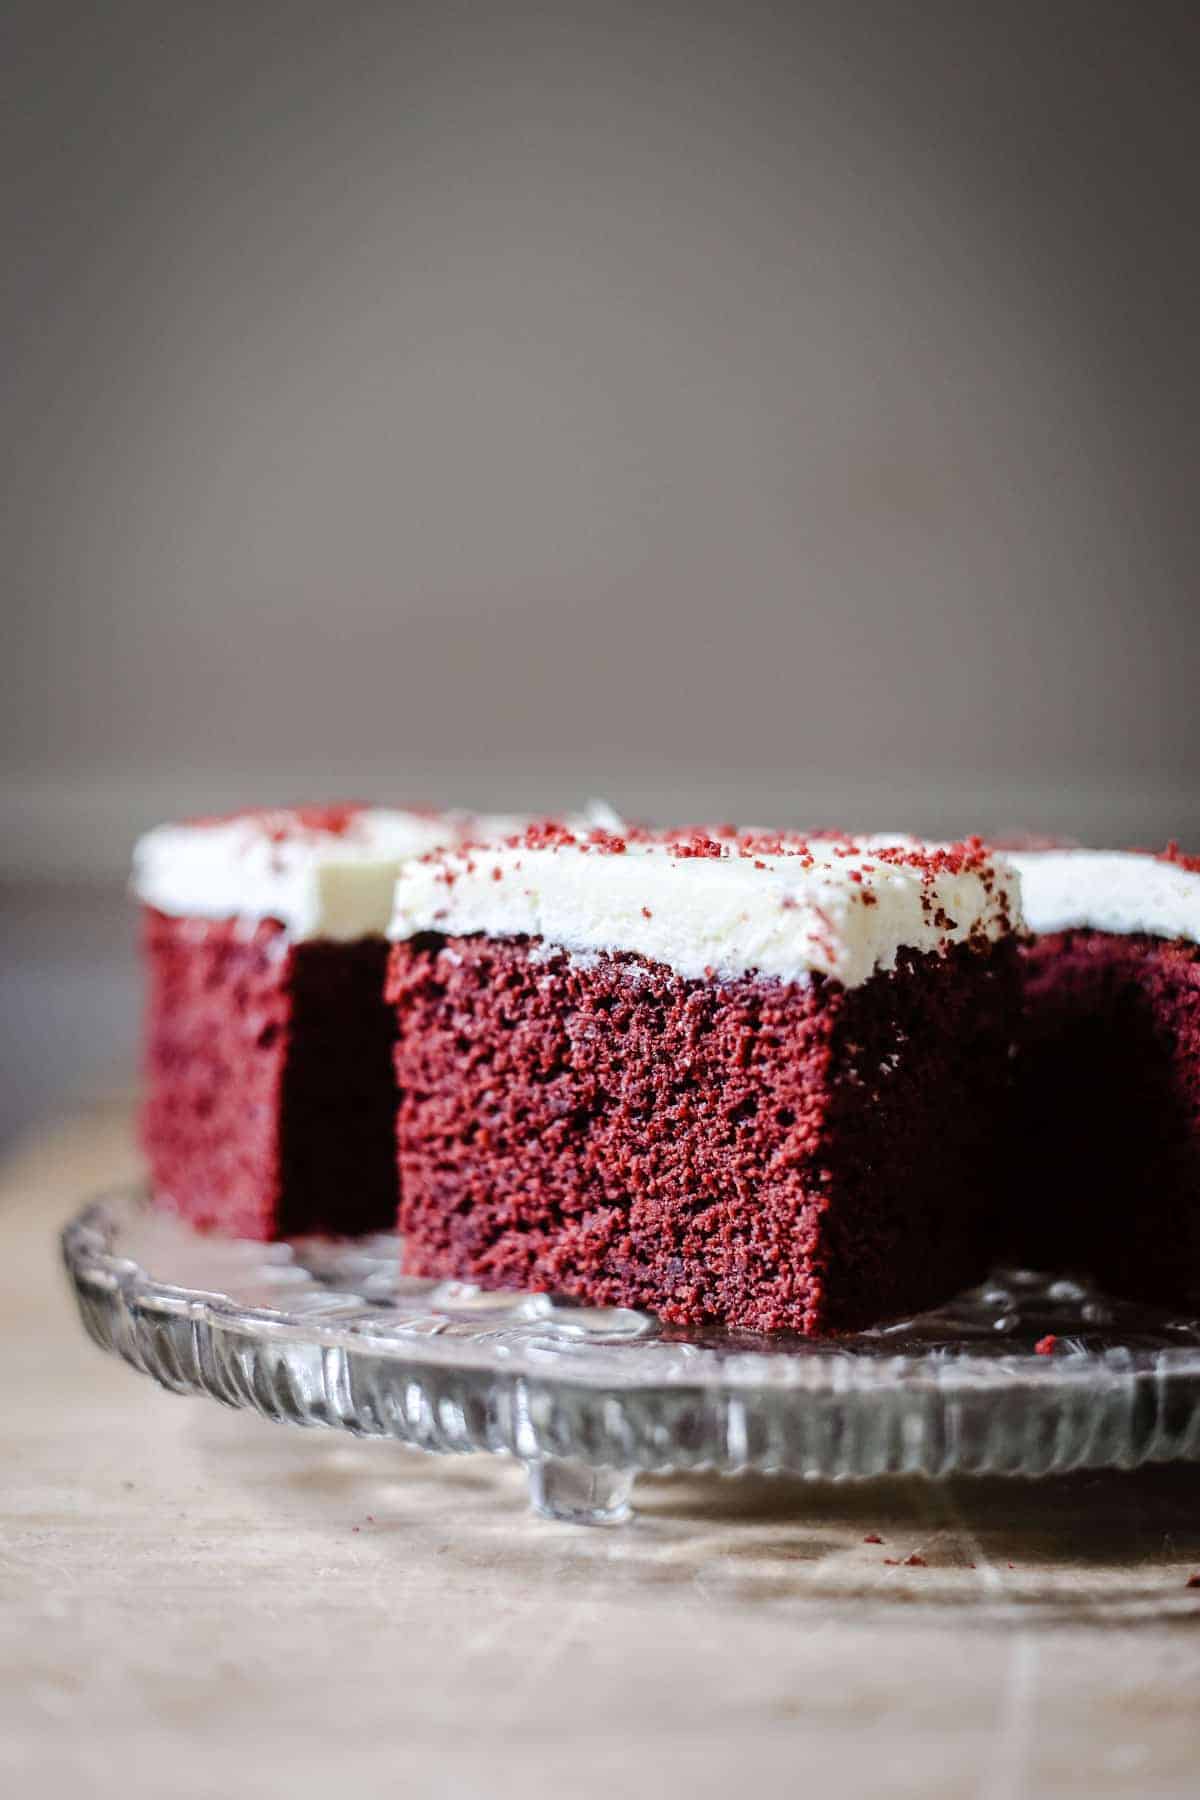 A plate of Gluten-Free Red Velvet Cake slices